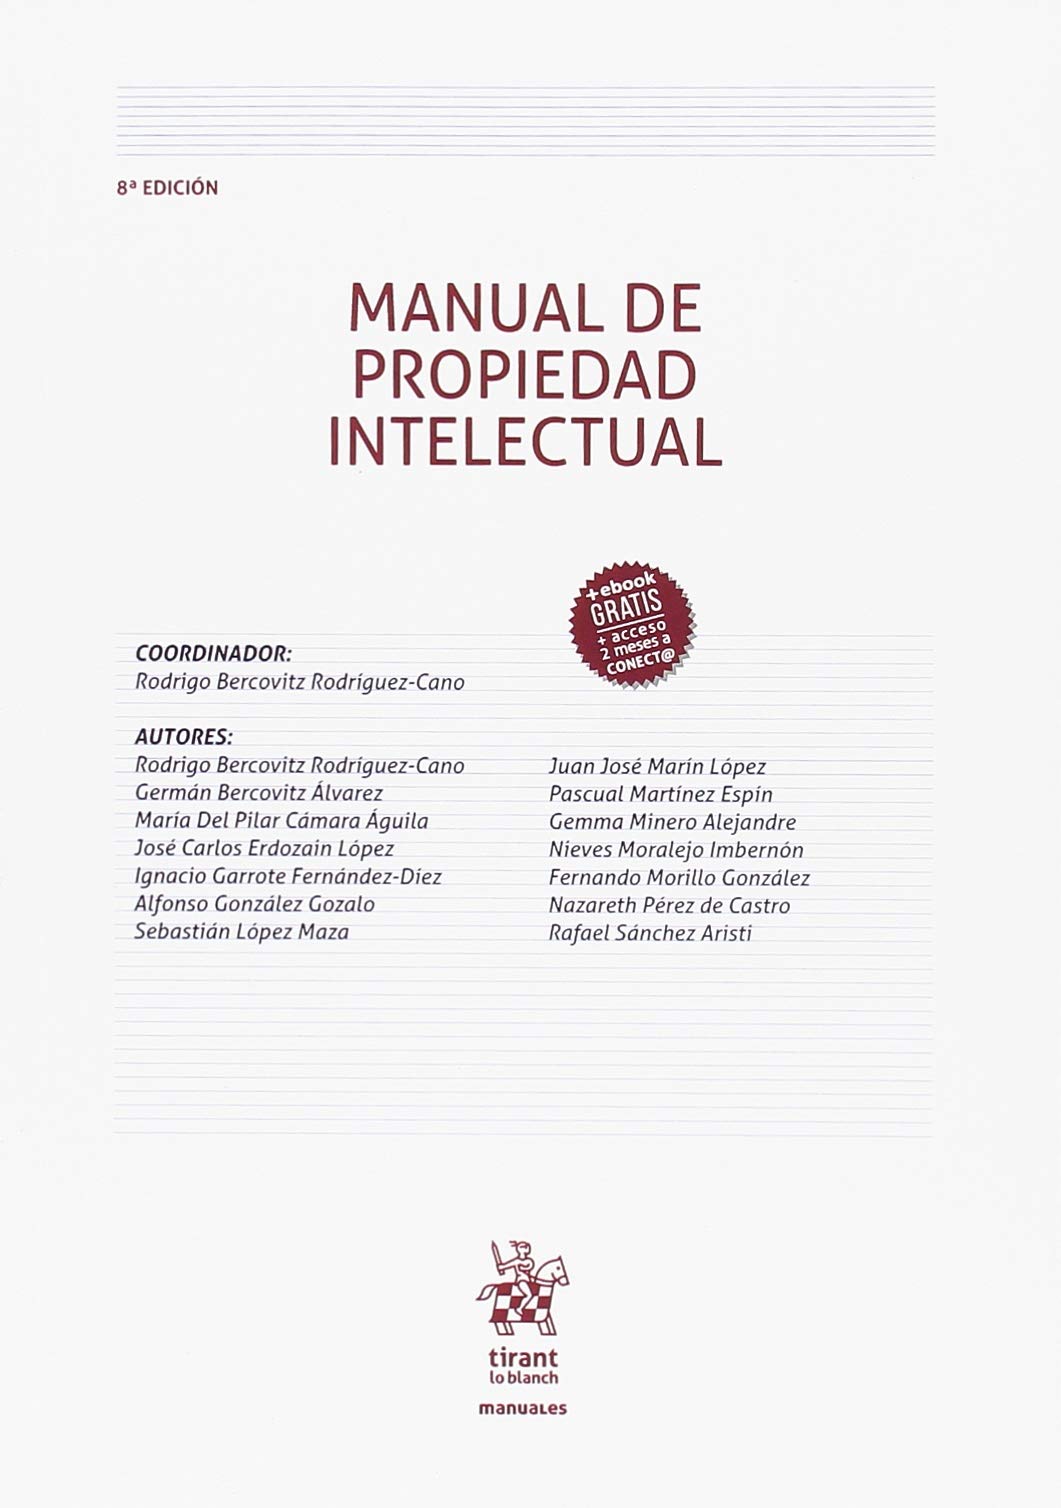 Manual de propiedad intelectual - Dialnet